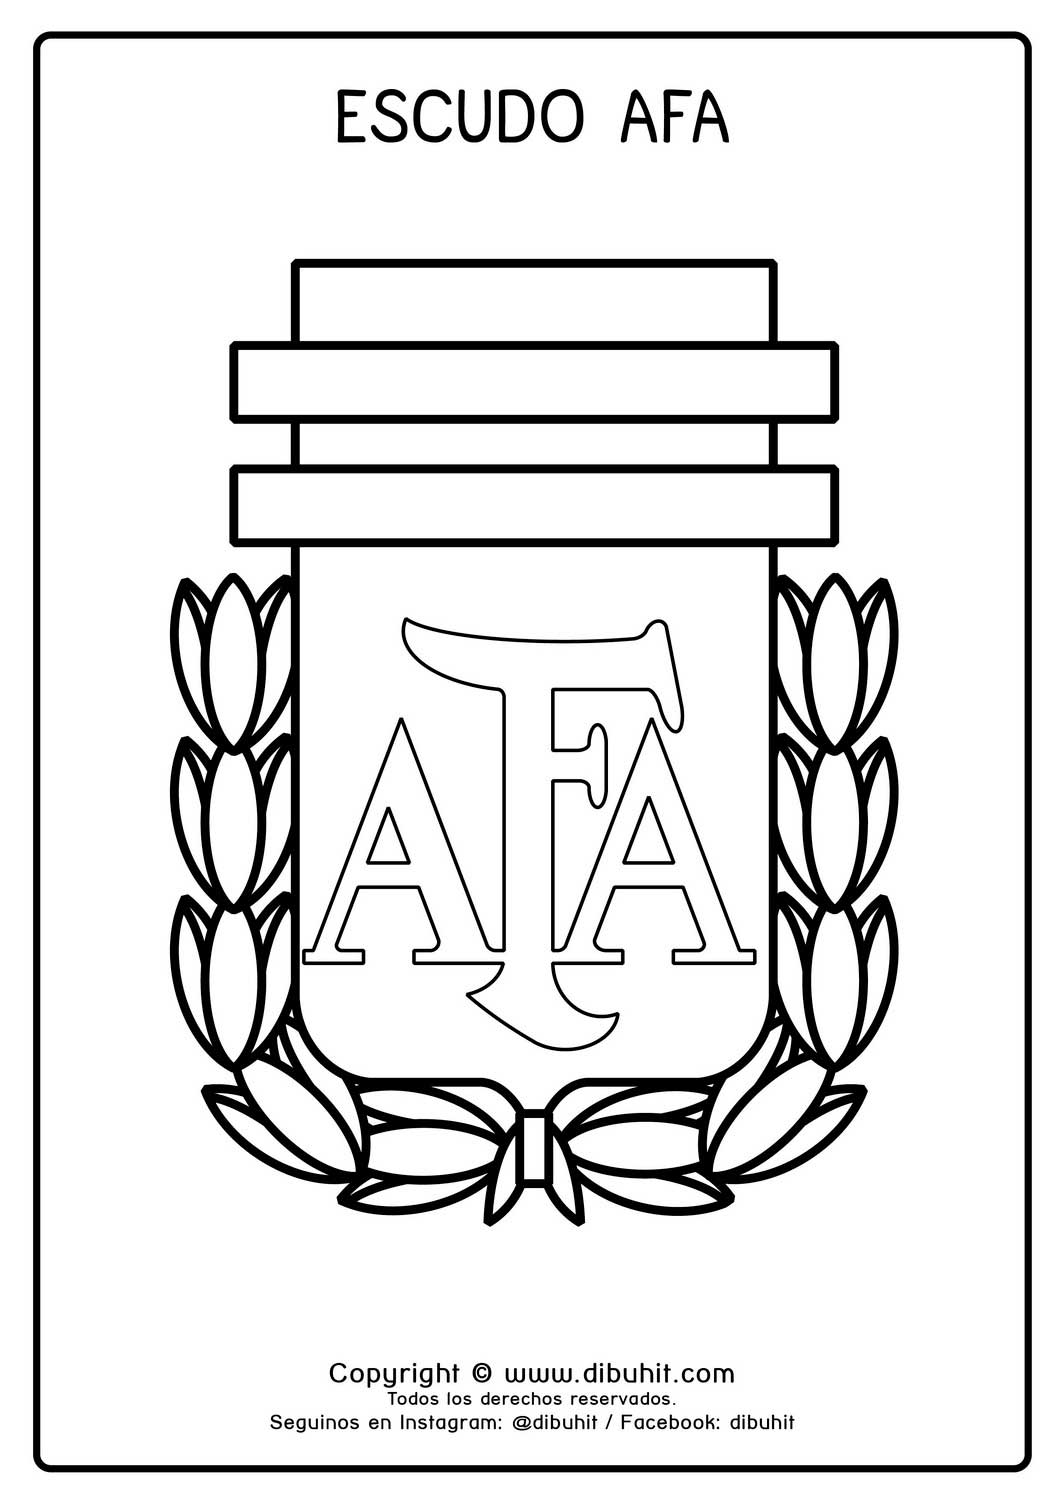 Escudo de futbol para colorear de afa asociacion de futbol argentino